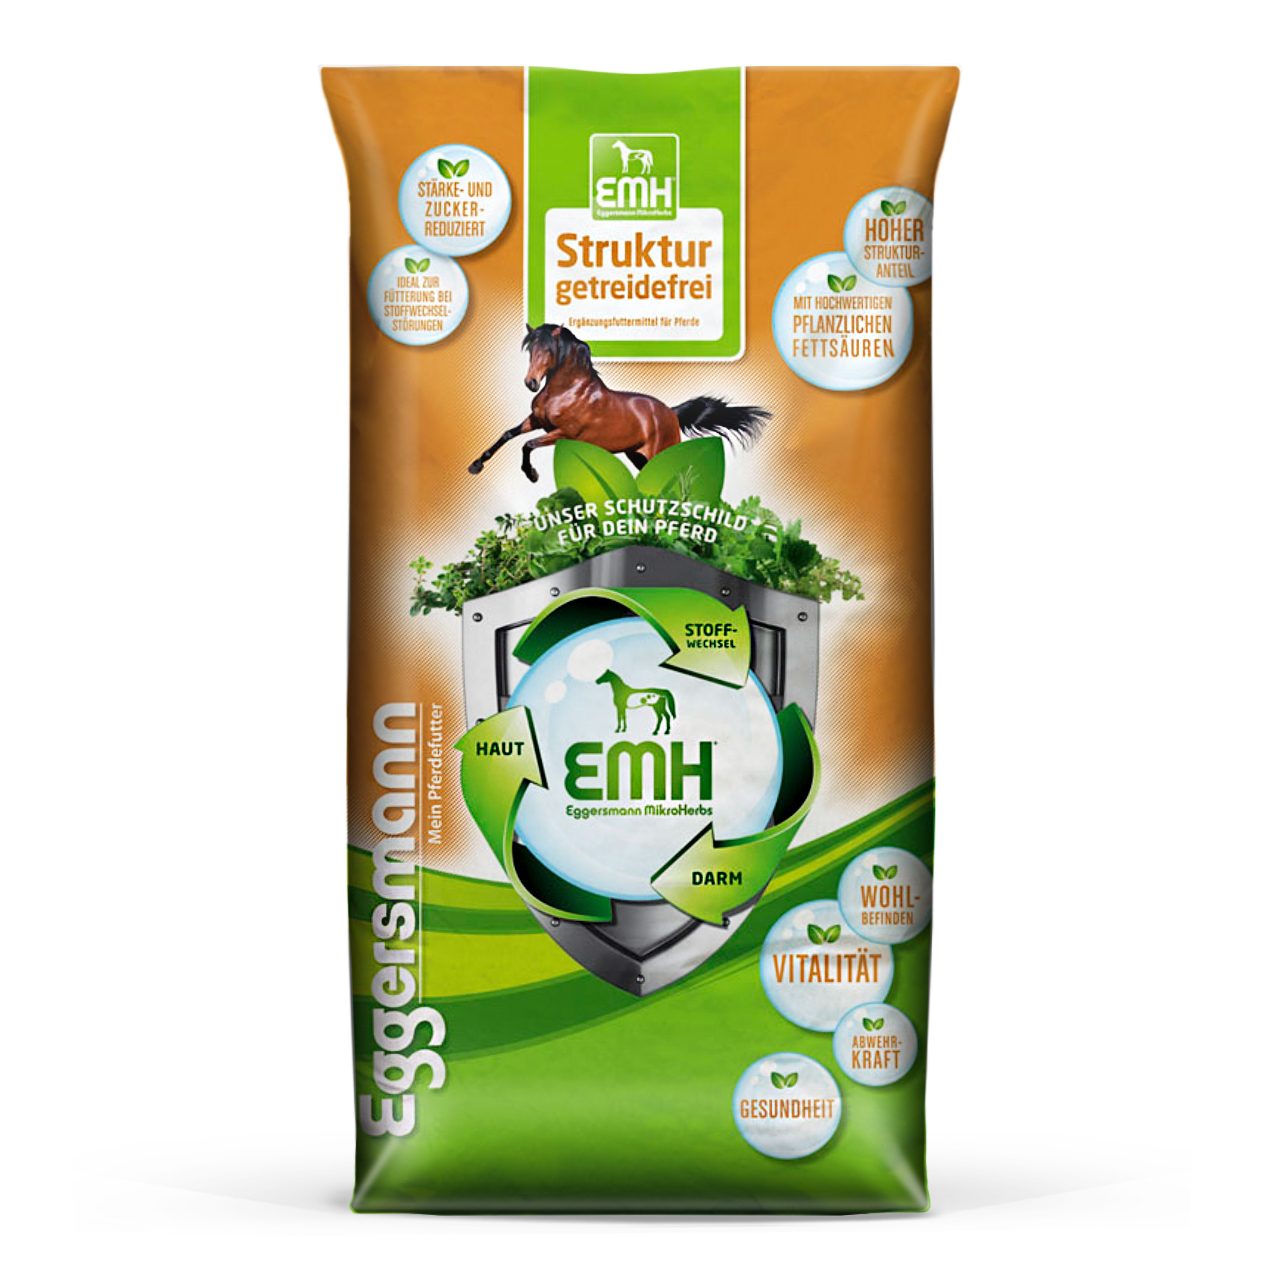 Eggersmann - EMH Struktur getreidefrei - Ideal zur Fütterung bei Stoffwechselbeschwerden